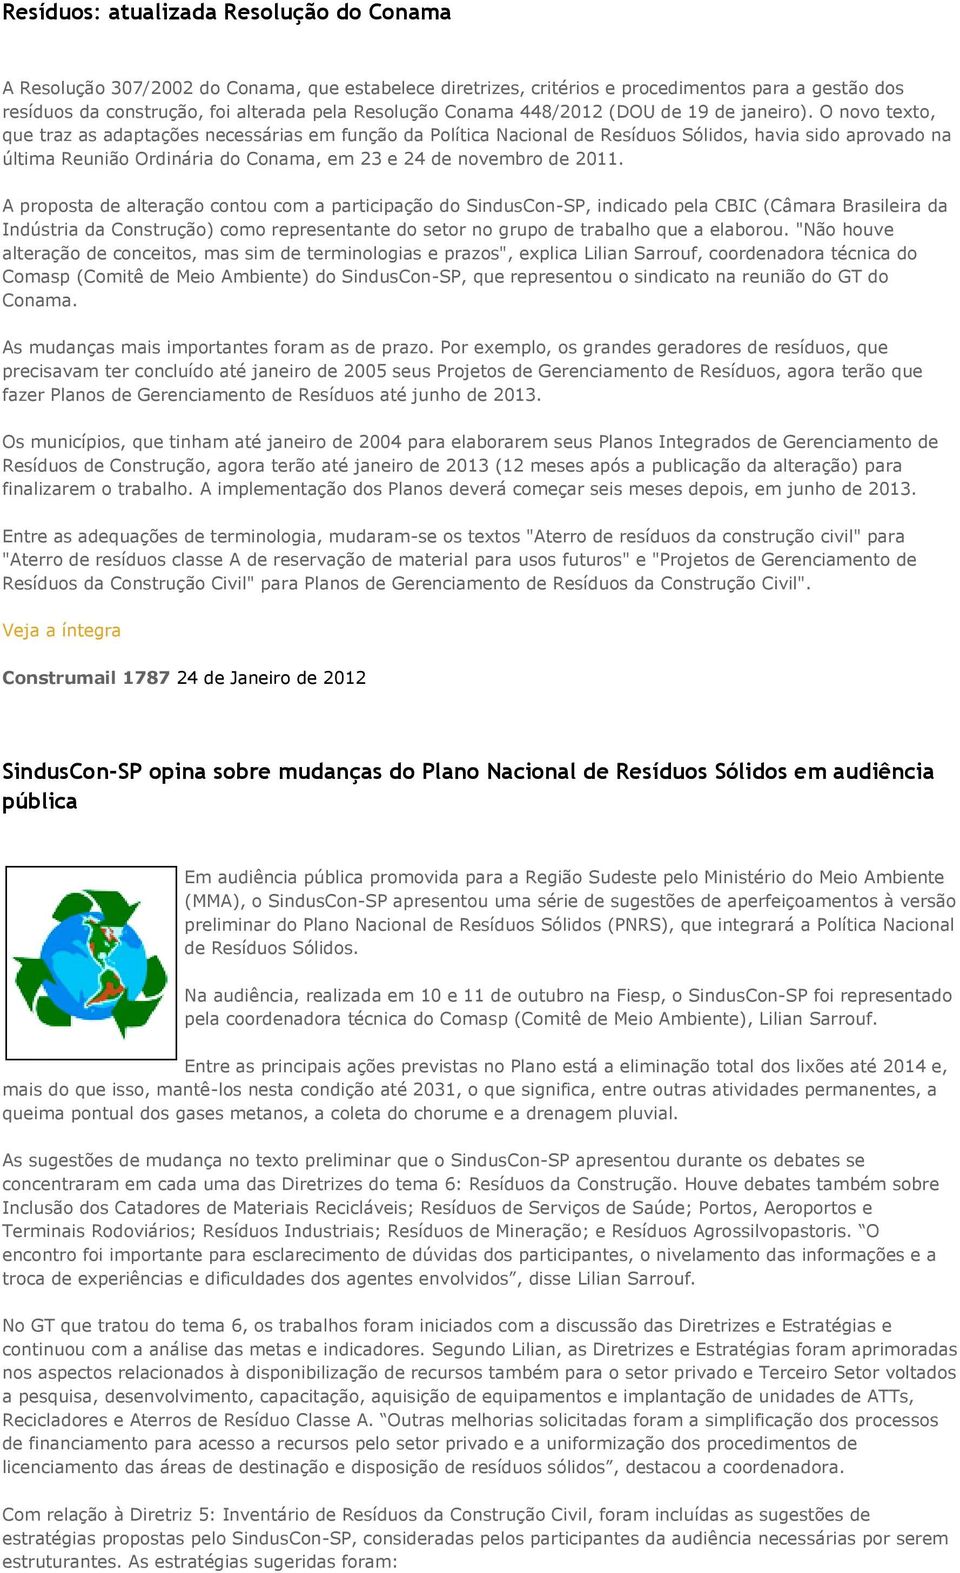 O novo texto, que traz as adaptações necessárias em função da Política Nacional de Resíduos Sólidos, havia sido aprovado na última Reunião Ordinária do Conama, em 23 e 24 de novembro de 2011.